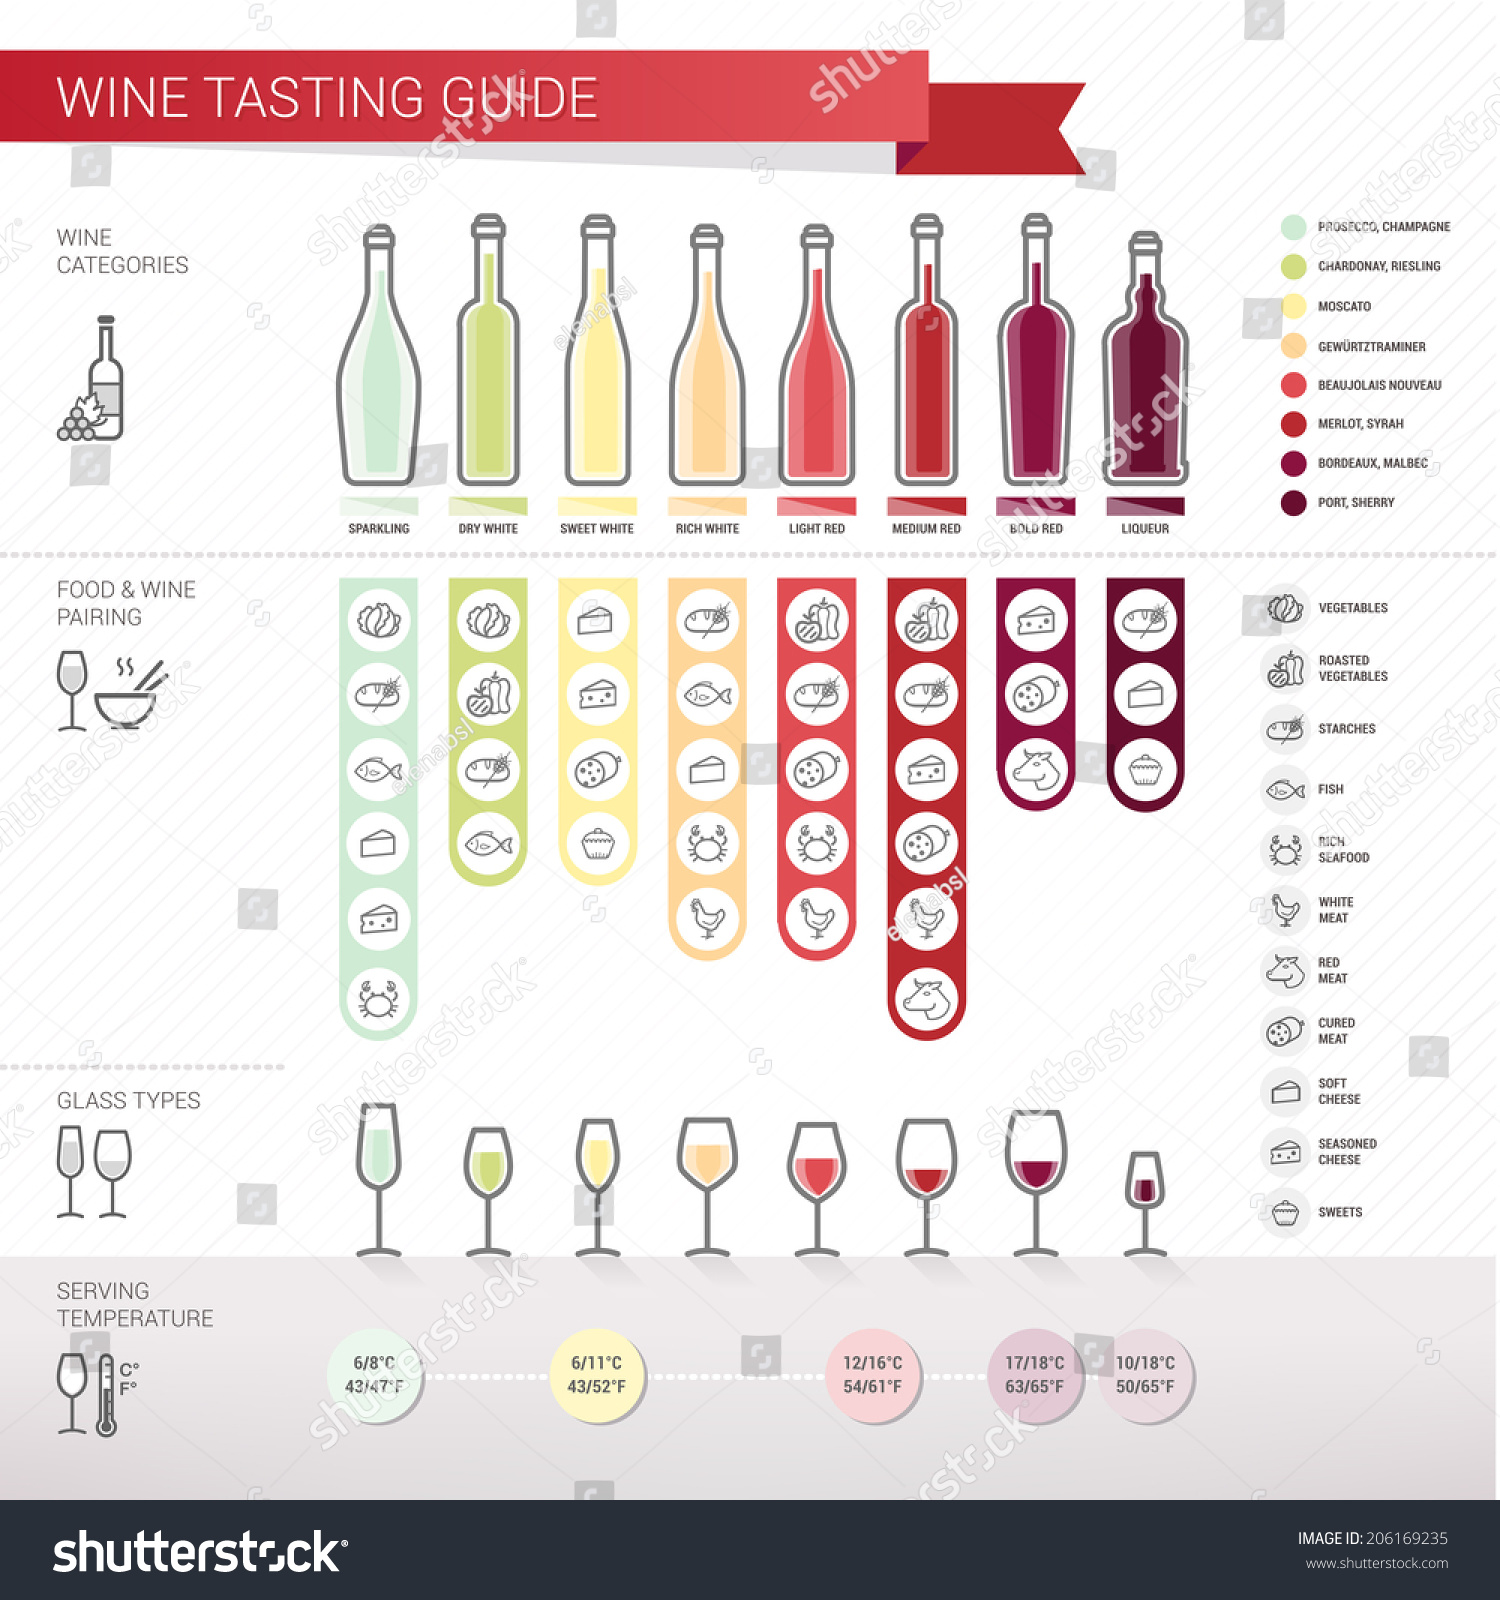 Wine tasting guide #206169235